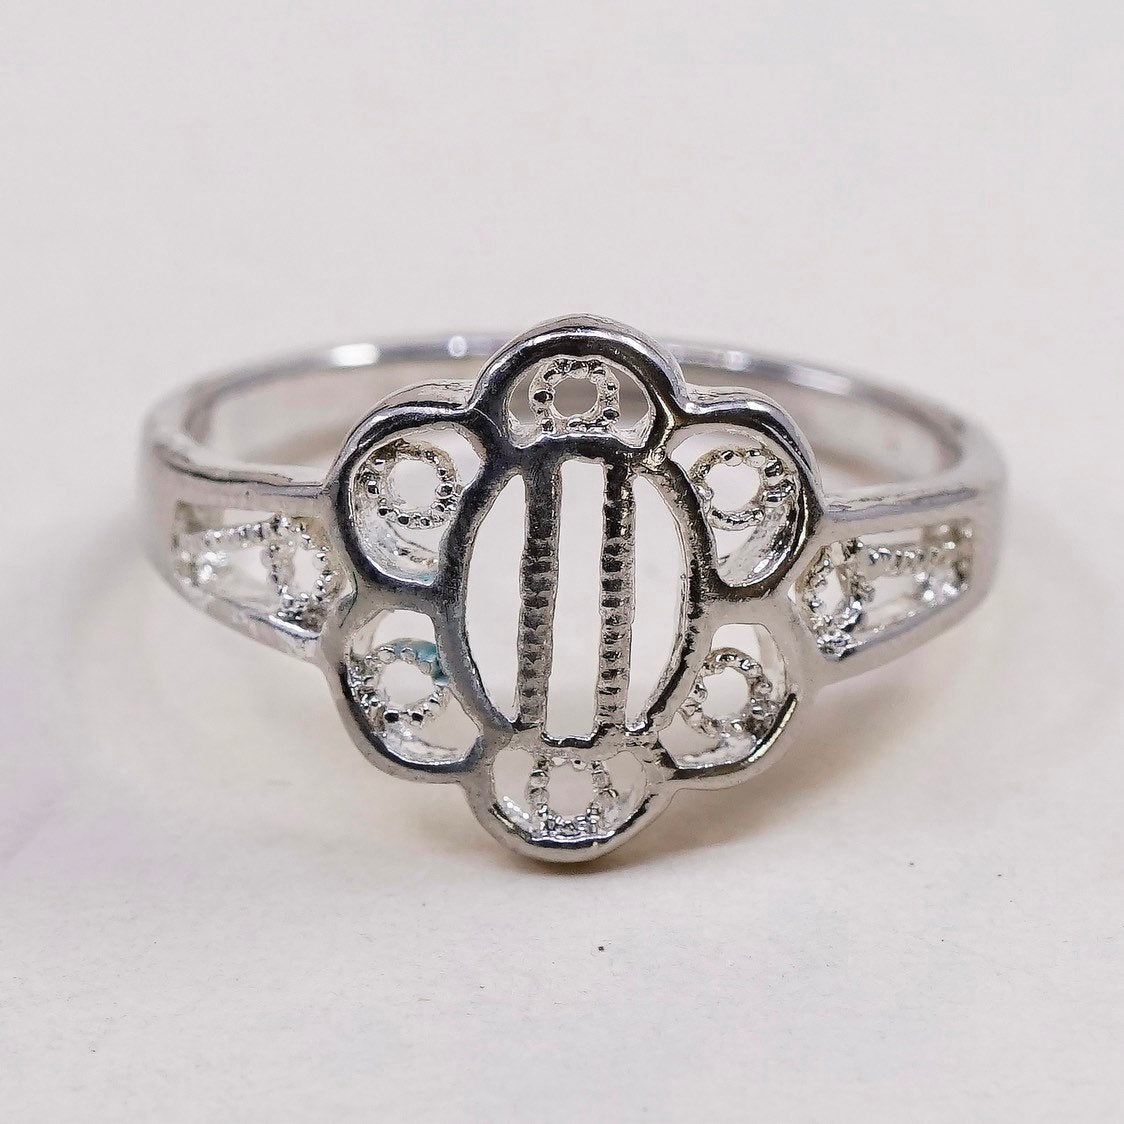 sz 9.25, vtg sterling silver handmade ring, 925 flower band w/ filigree